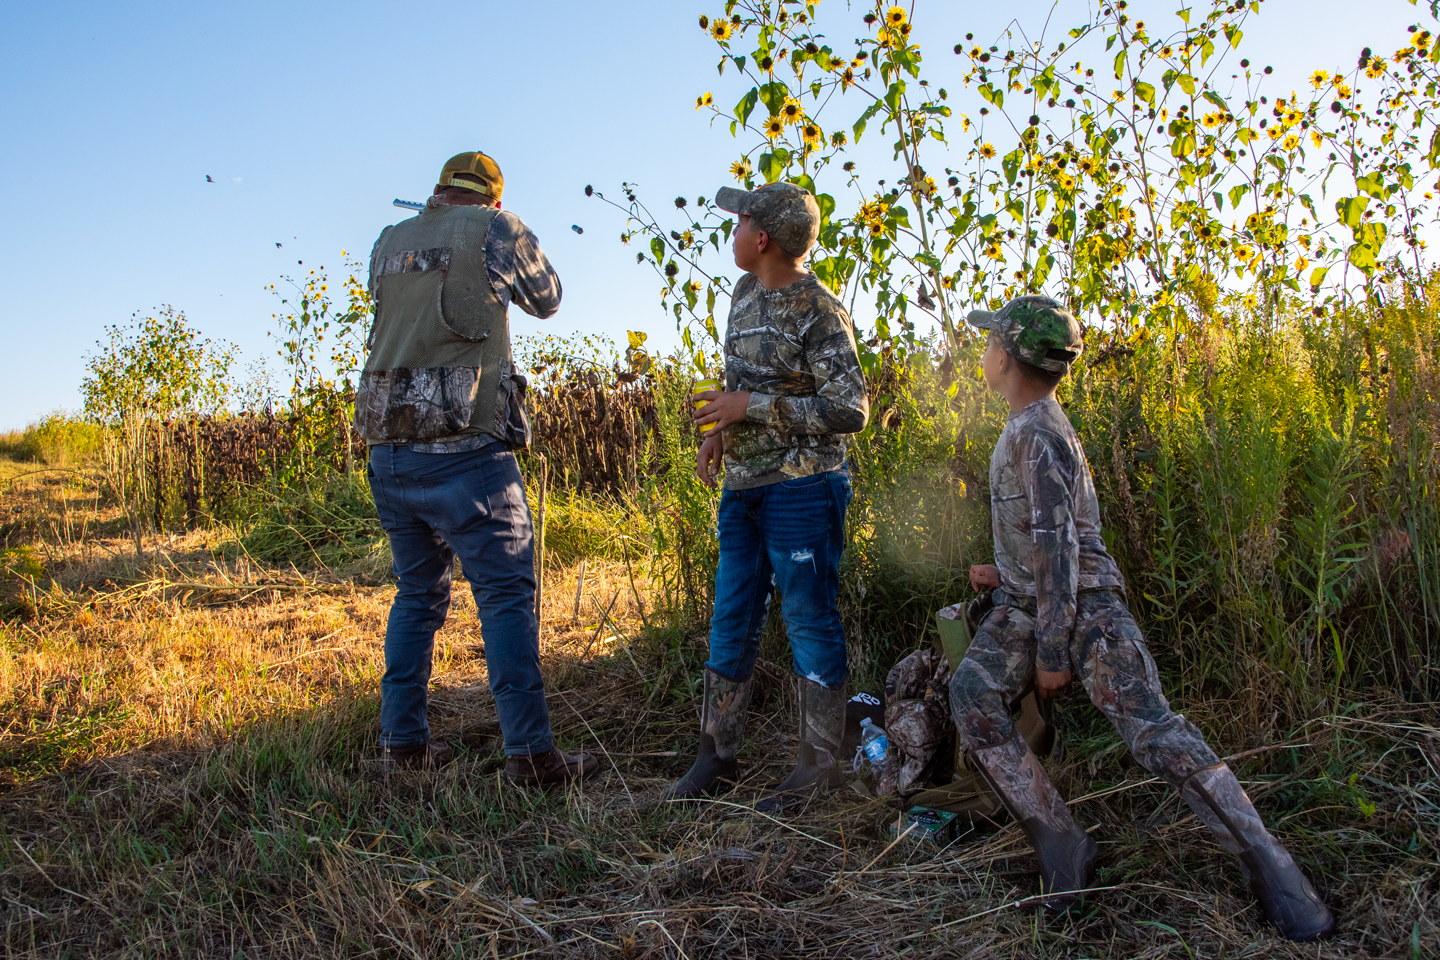 Read More: Dove hunting season opens Sept. 1 in Nebraska